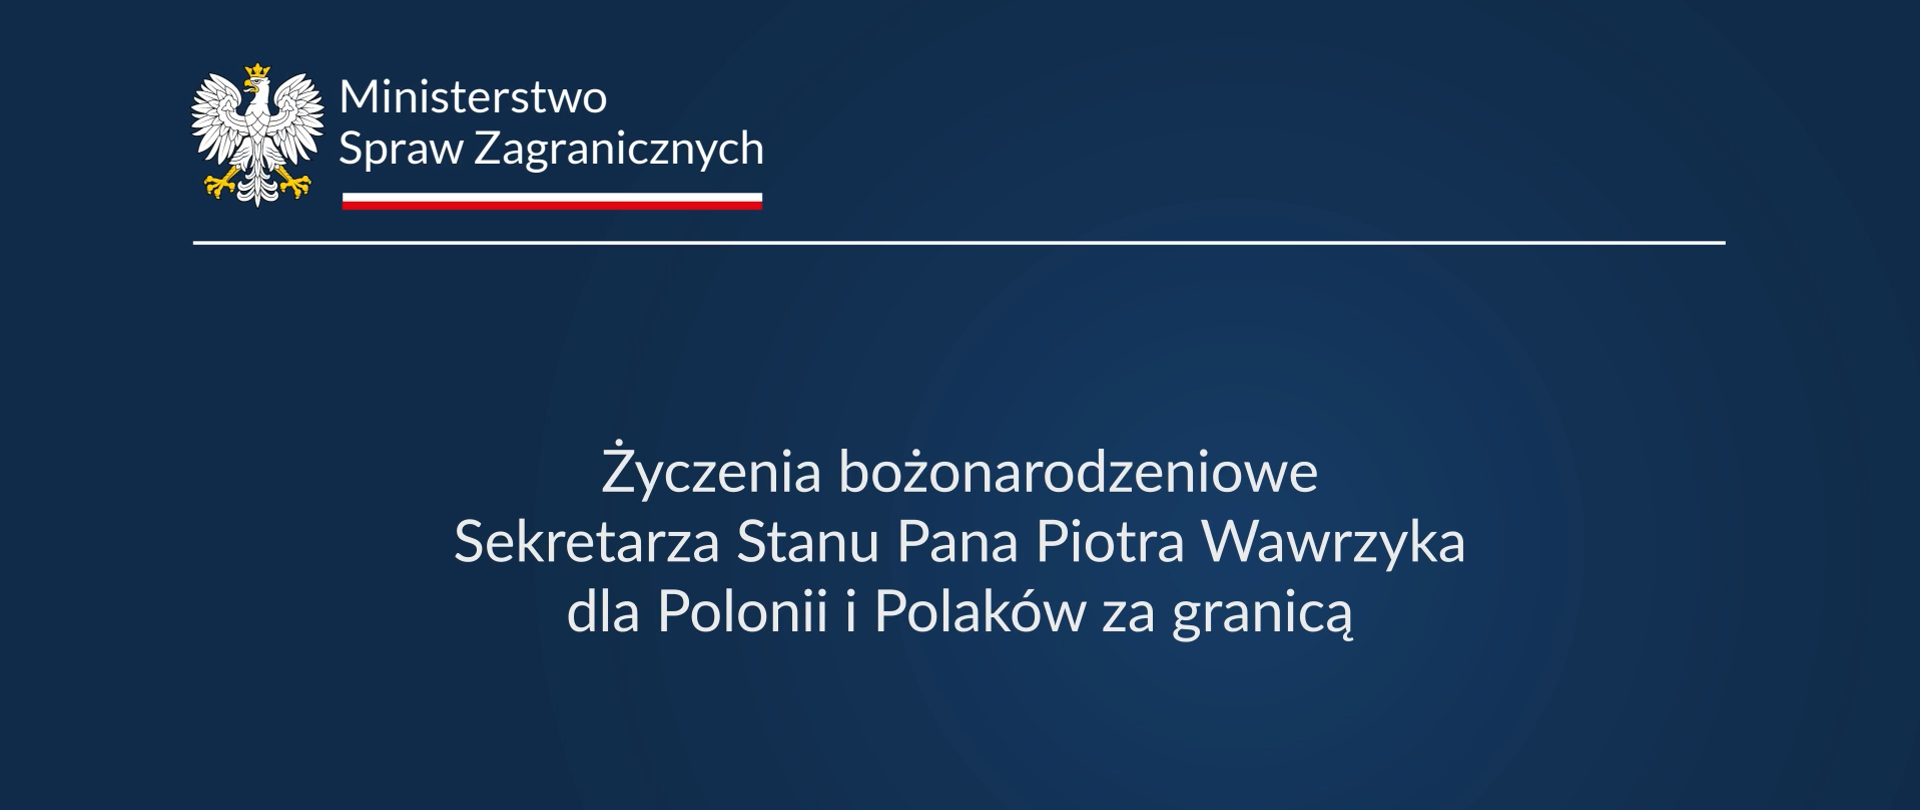 Życzenia bożonarodzeniowe Sekretarza Stanu Pana Piotra Wawrzyka dla Polonii i Polaków za granicą